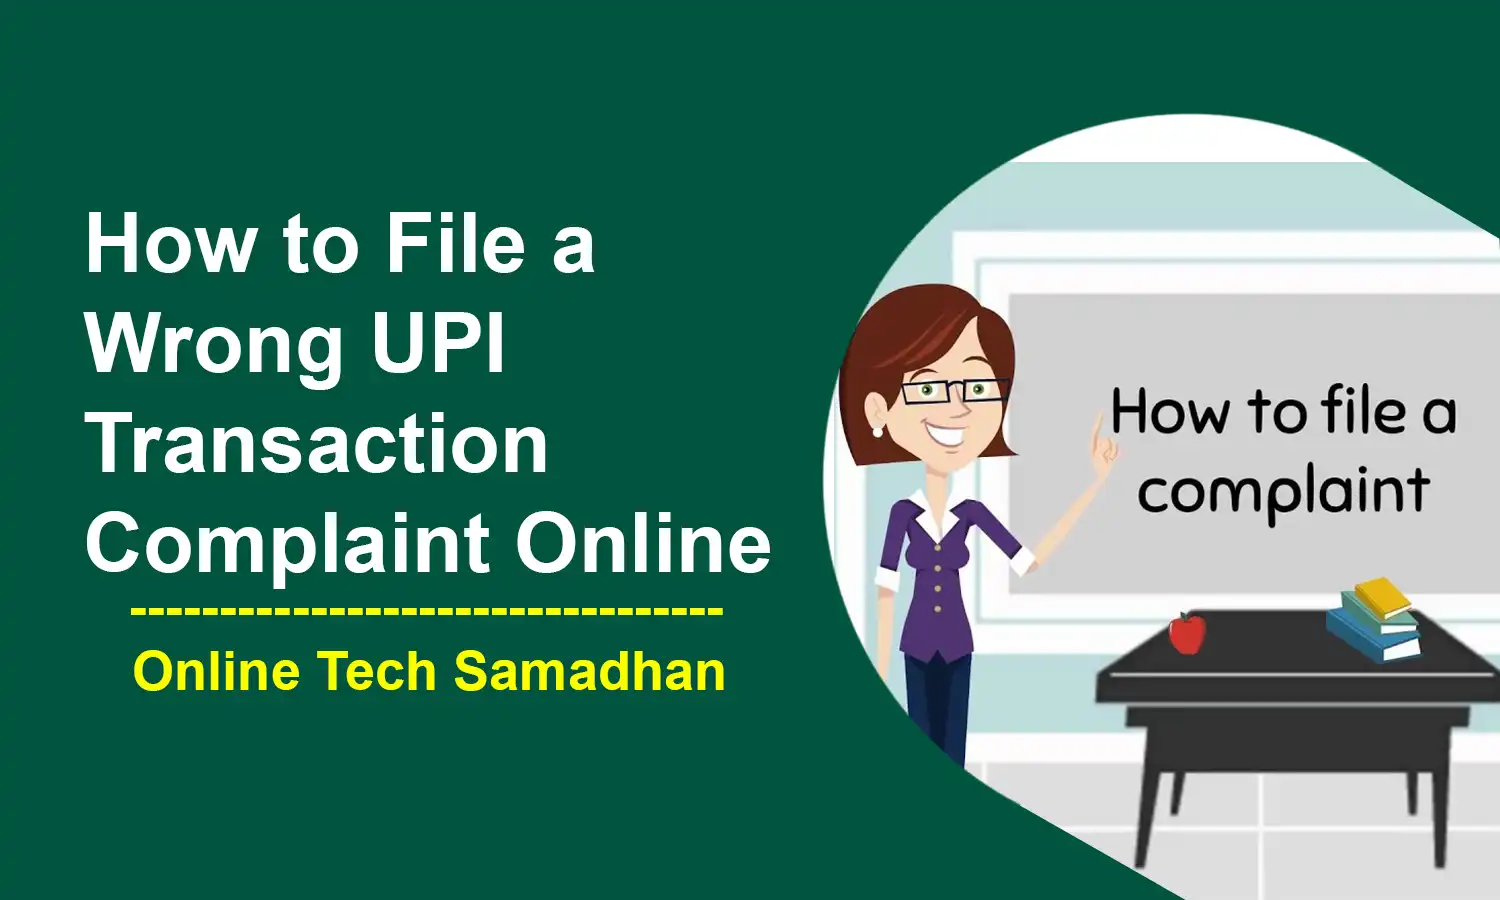 File a Wrong UPI Transaction Complaint Online